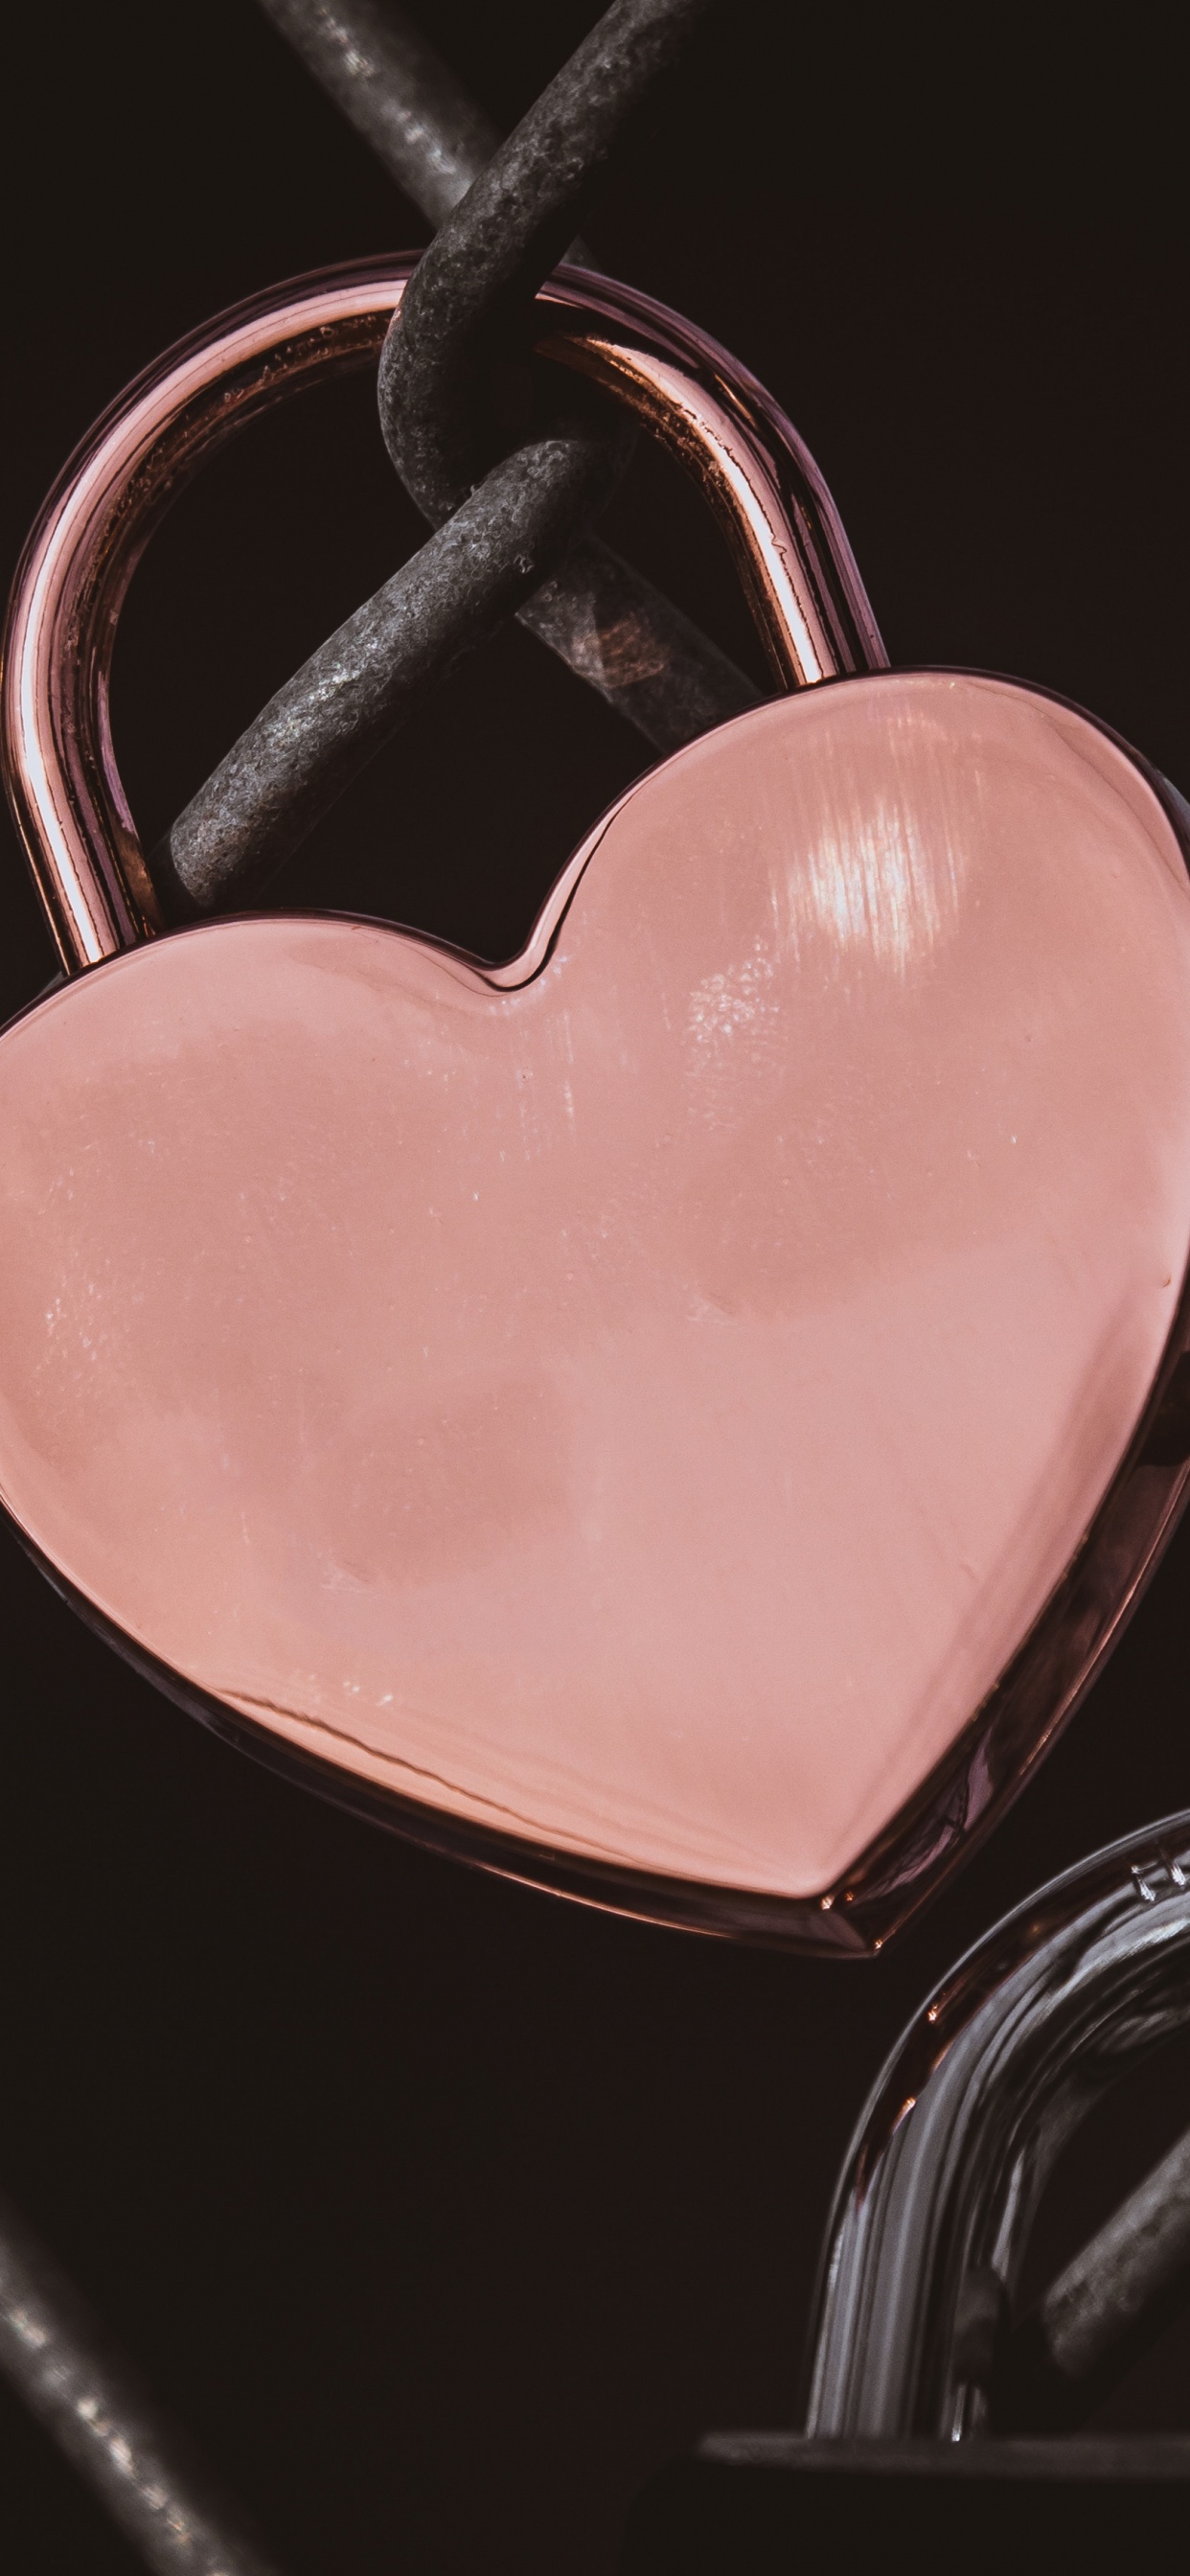 心脏, 粉红色, 爱情, 器官, 人类的身体 壁纸 1242x2688 允许